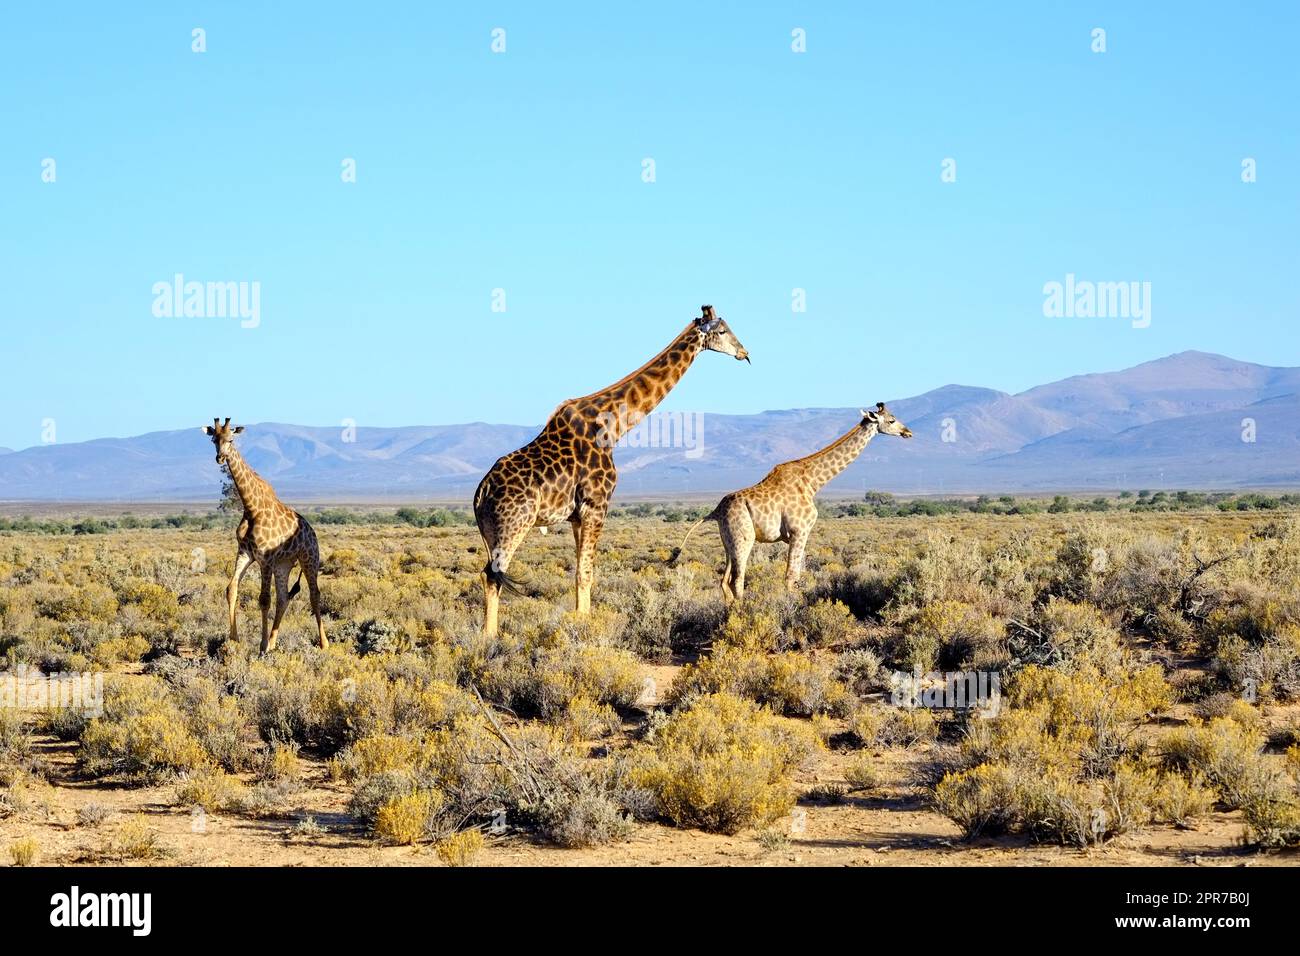 Grandes girafes dans la savane d'Afrique du Sud. La conservation de la faune est importante pour tous les animaux vivant dans la nature. Animaux marchant autour d'une forêt dans un safari contre un ciel bleu clair Banque D'Images